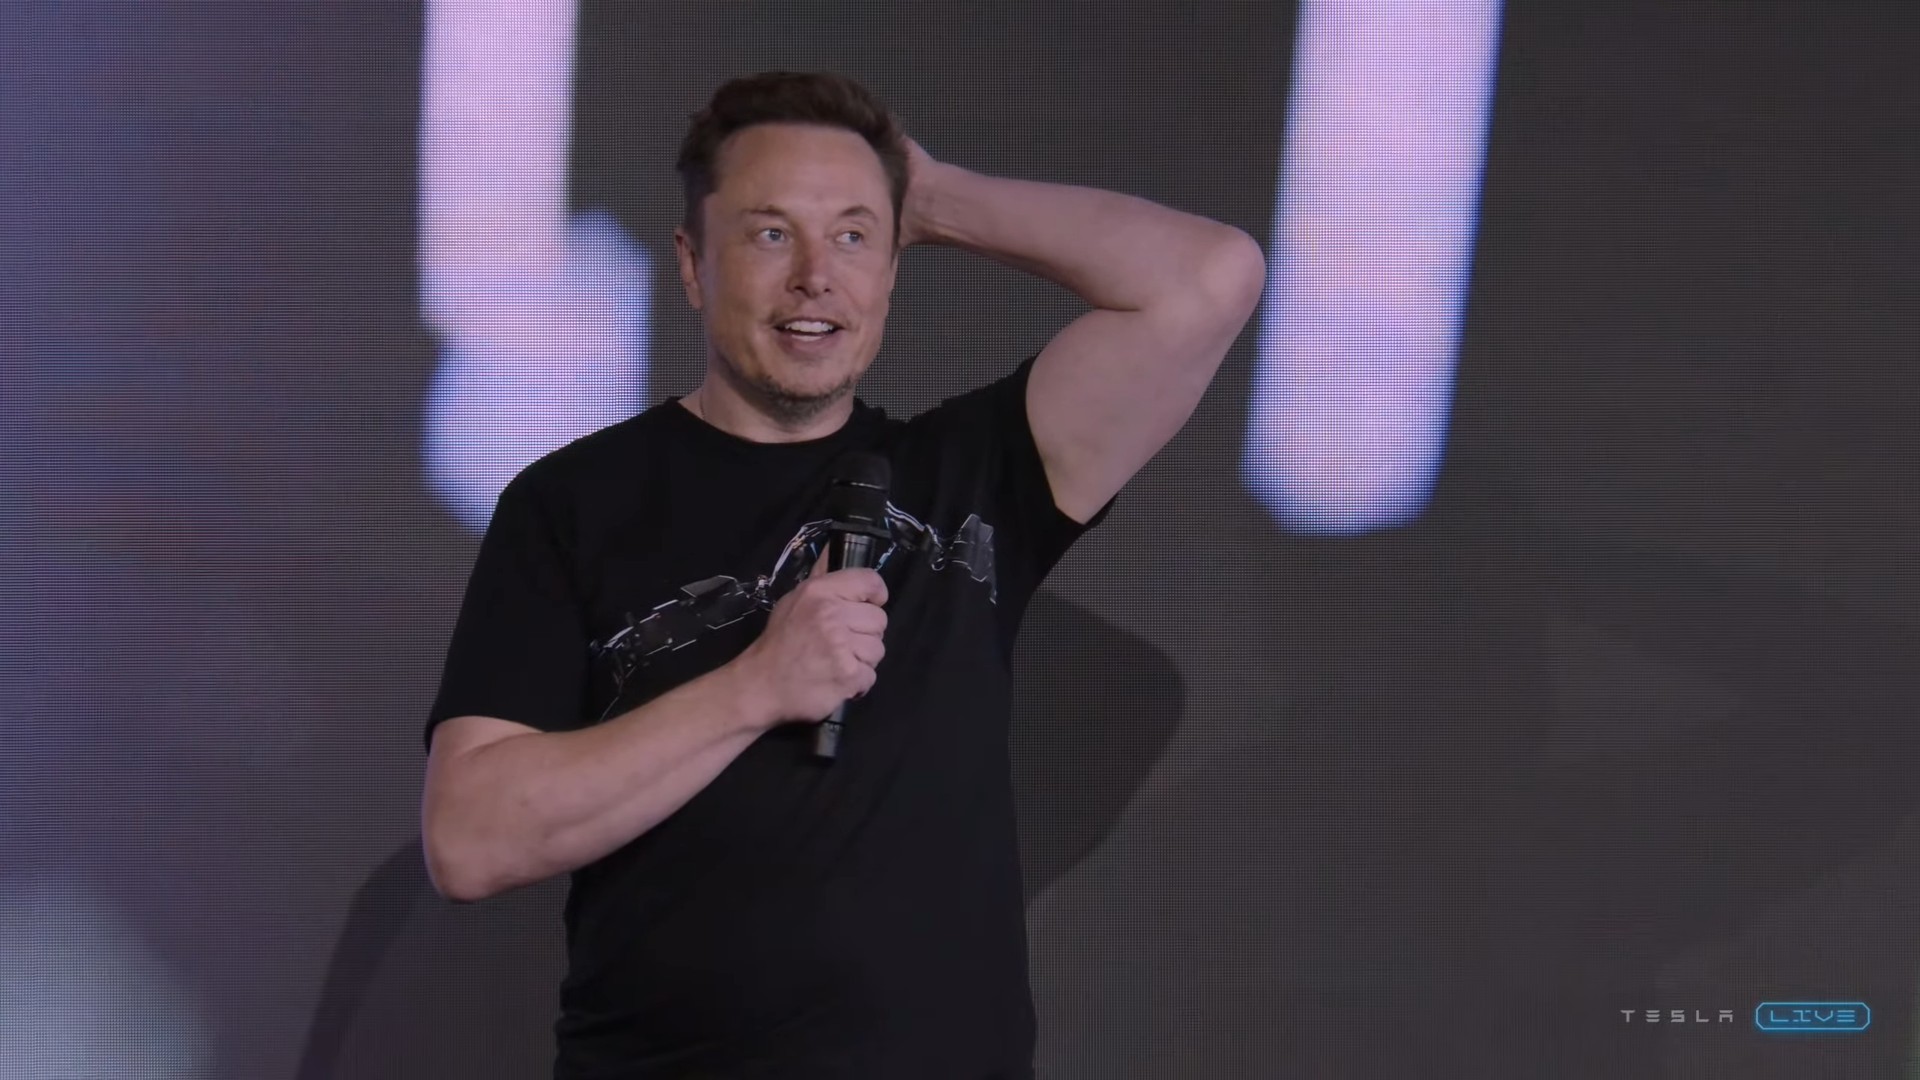 Elon Musk quer vender 20 milhões de Tesla por ano. Será possível?